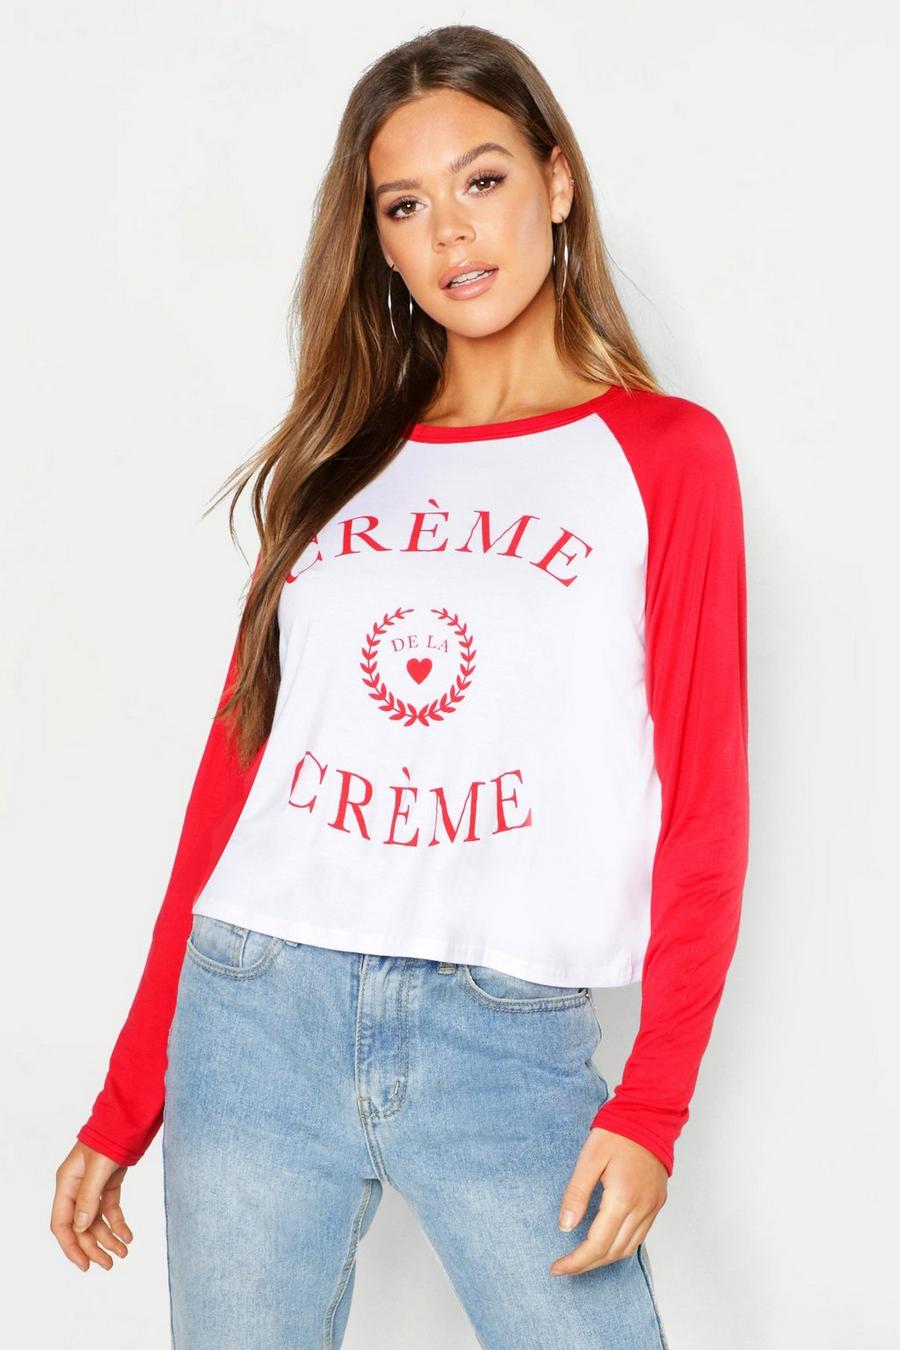 Creme De La Creme Slogan Raglan T-Shirt image number 1